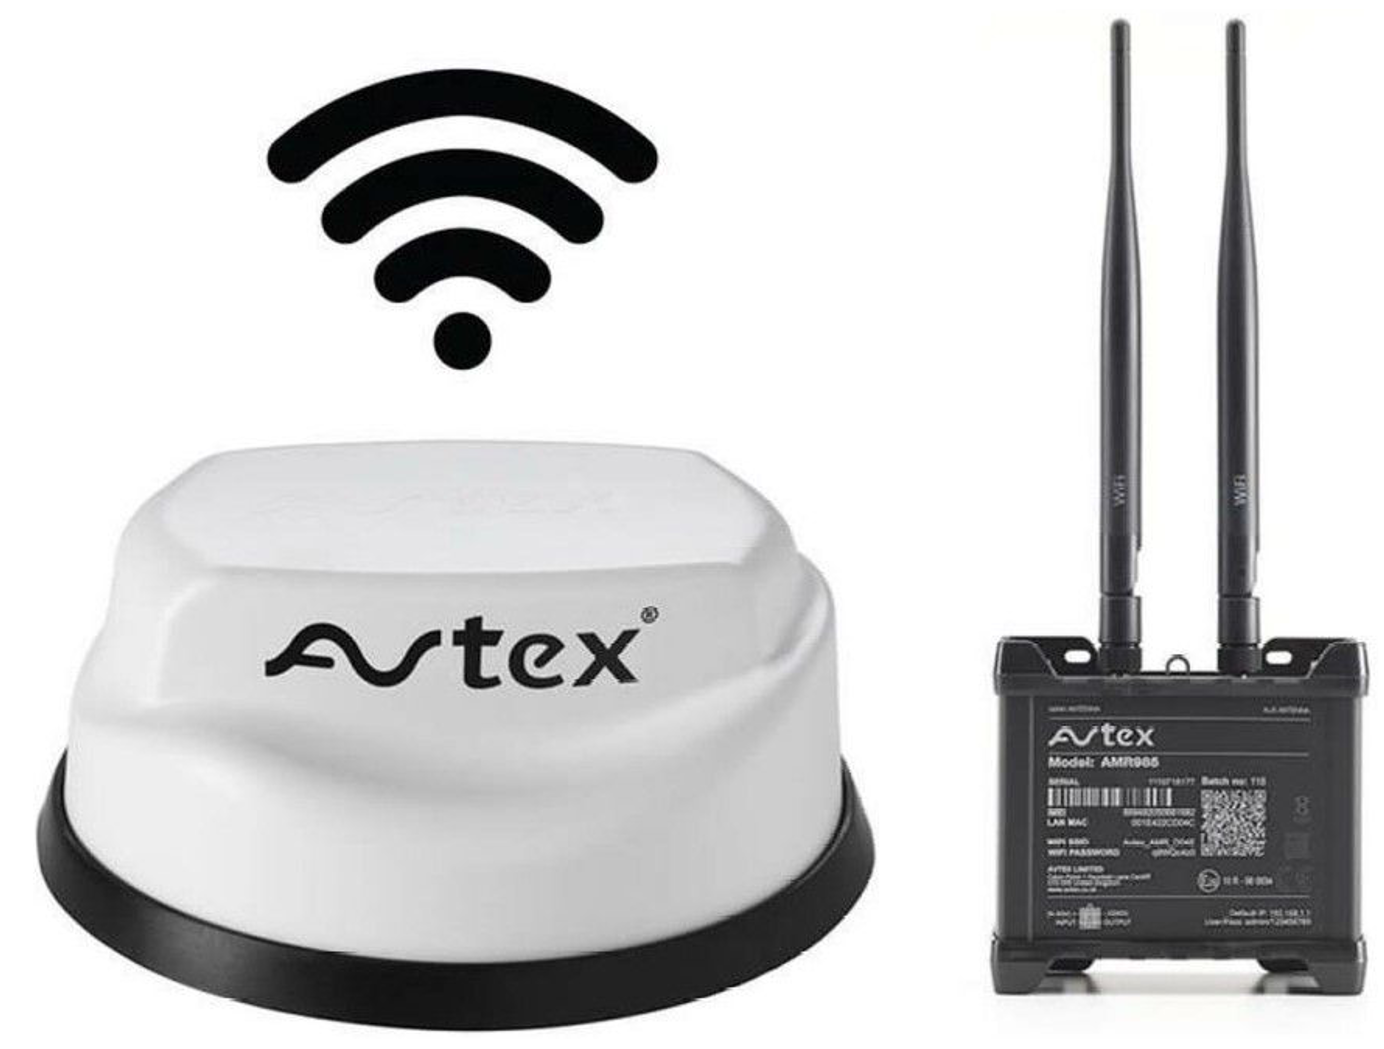 Avtex AMR985 Mobile Internet Solution - Dual Sim 5G Mobile Router